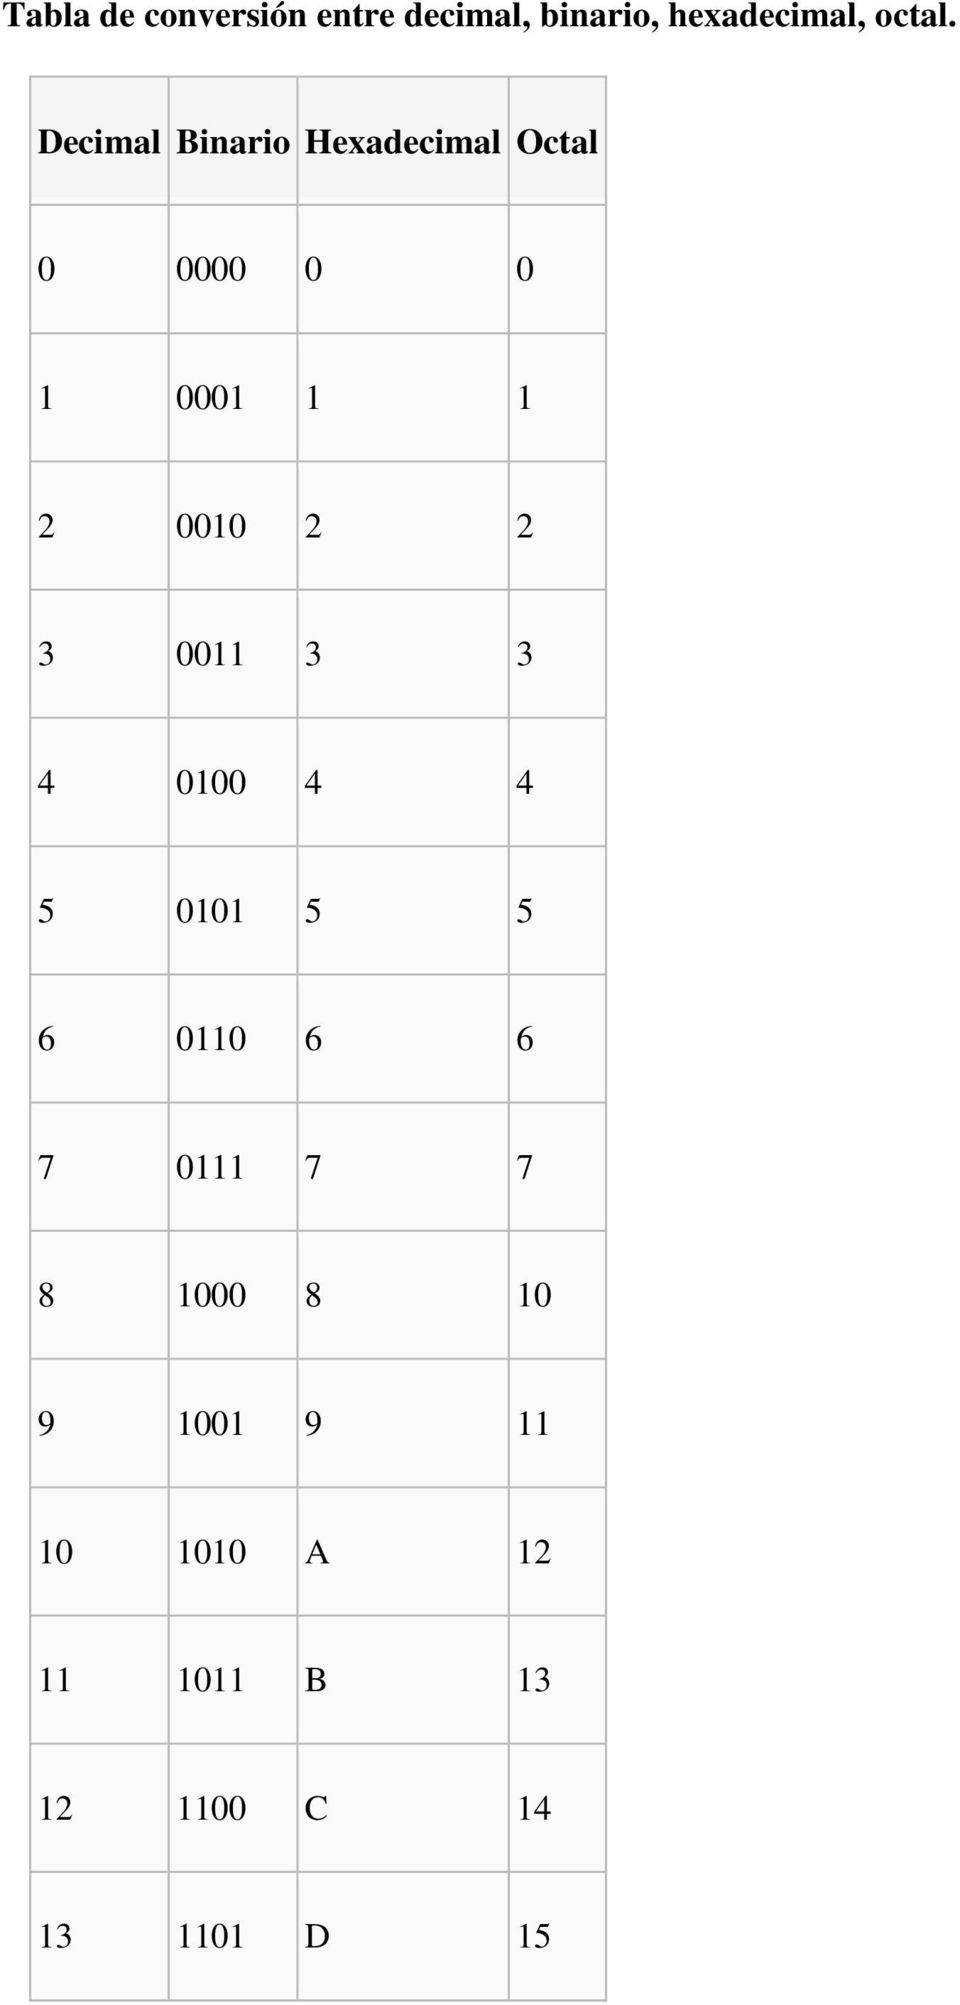 Decimal Binario Hexadecimal Octal 2 2 2